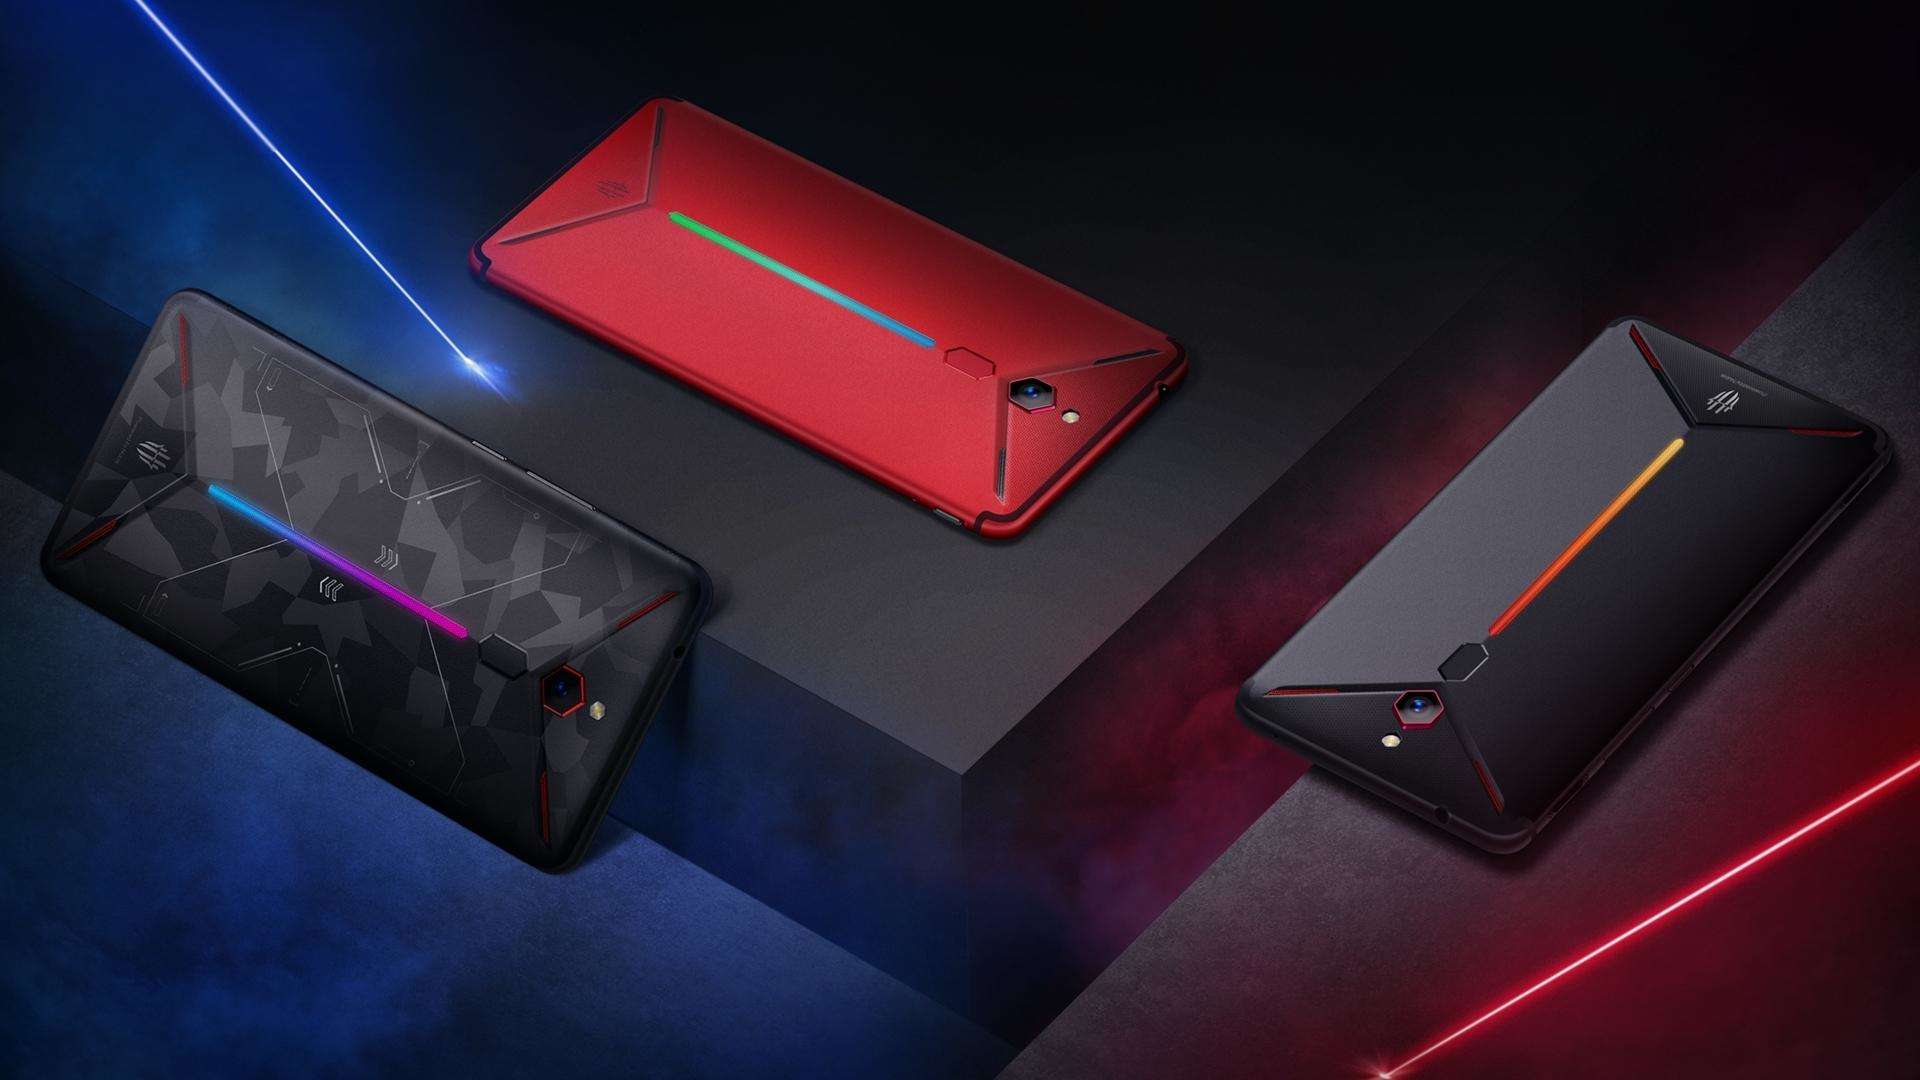 Nubia करेगी भारत में गेमिंग स्मार्टफोन Red Magic 3 लॉन्च